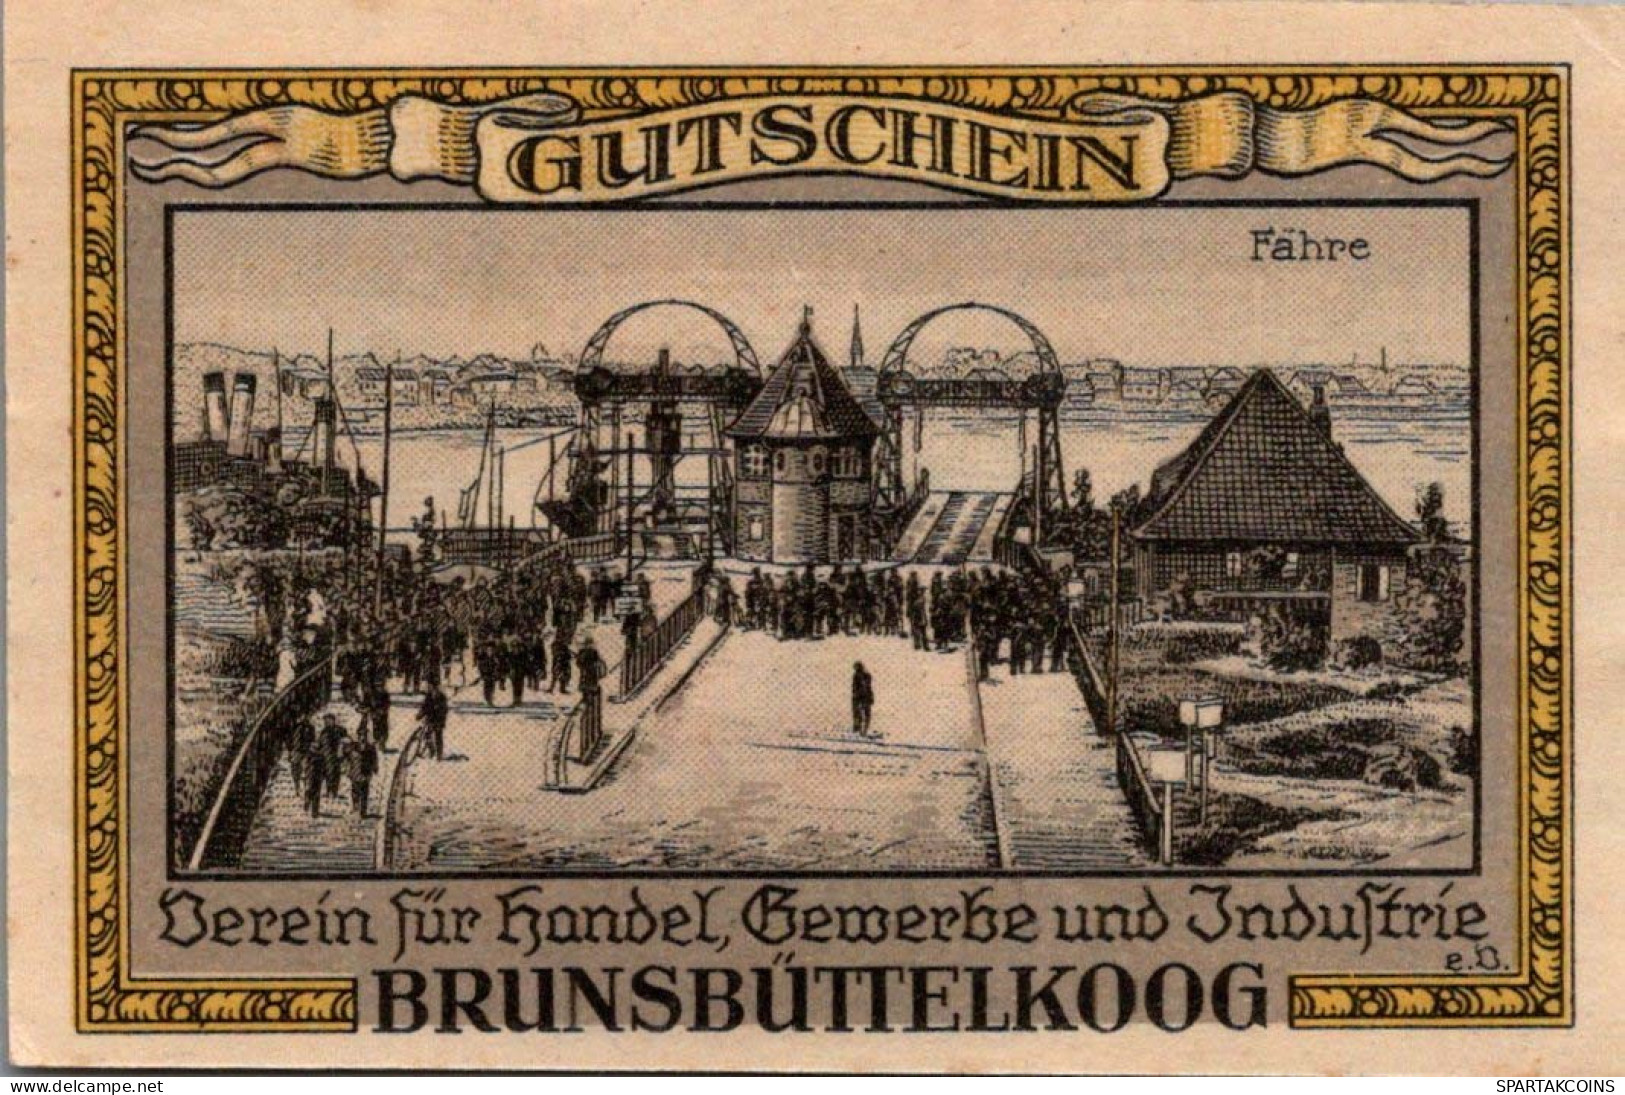 50 PFENNIG 1922 Stadt BRUNSBÜTTELKOOG Schleswig-Holstein UNC DEUTSCHLAND #PA325 - [11] Local Banknote Issues